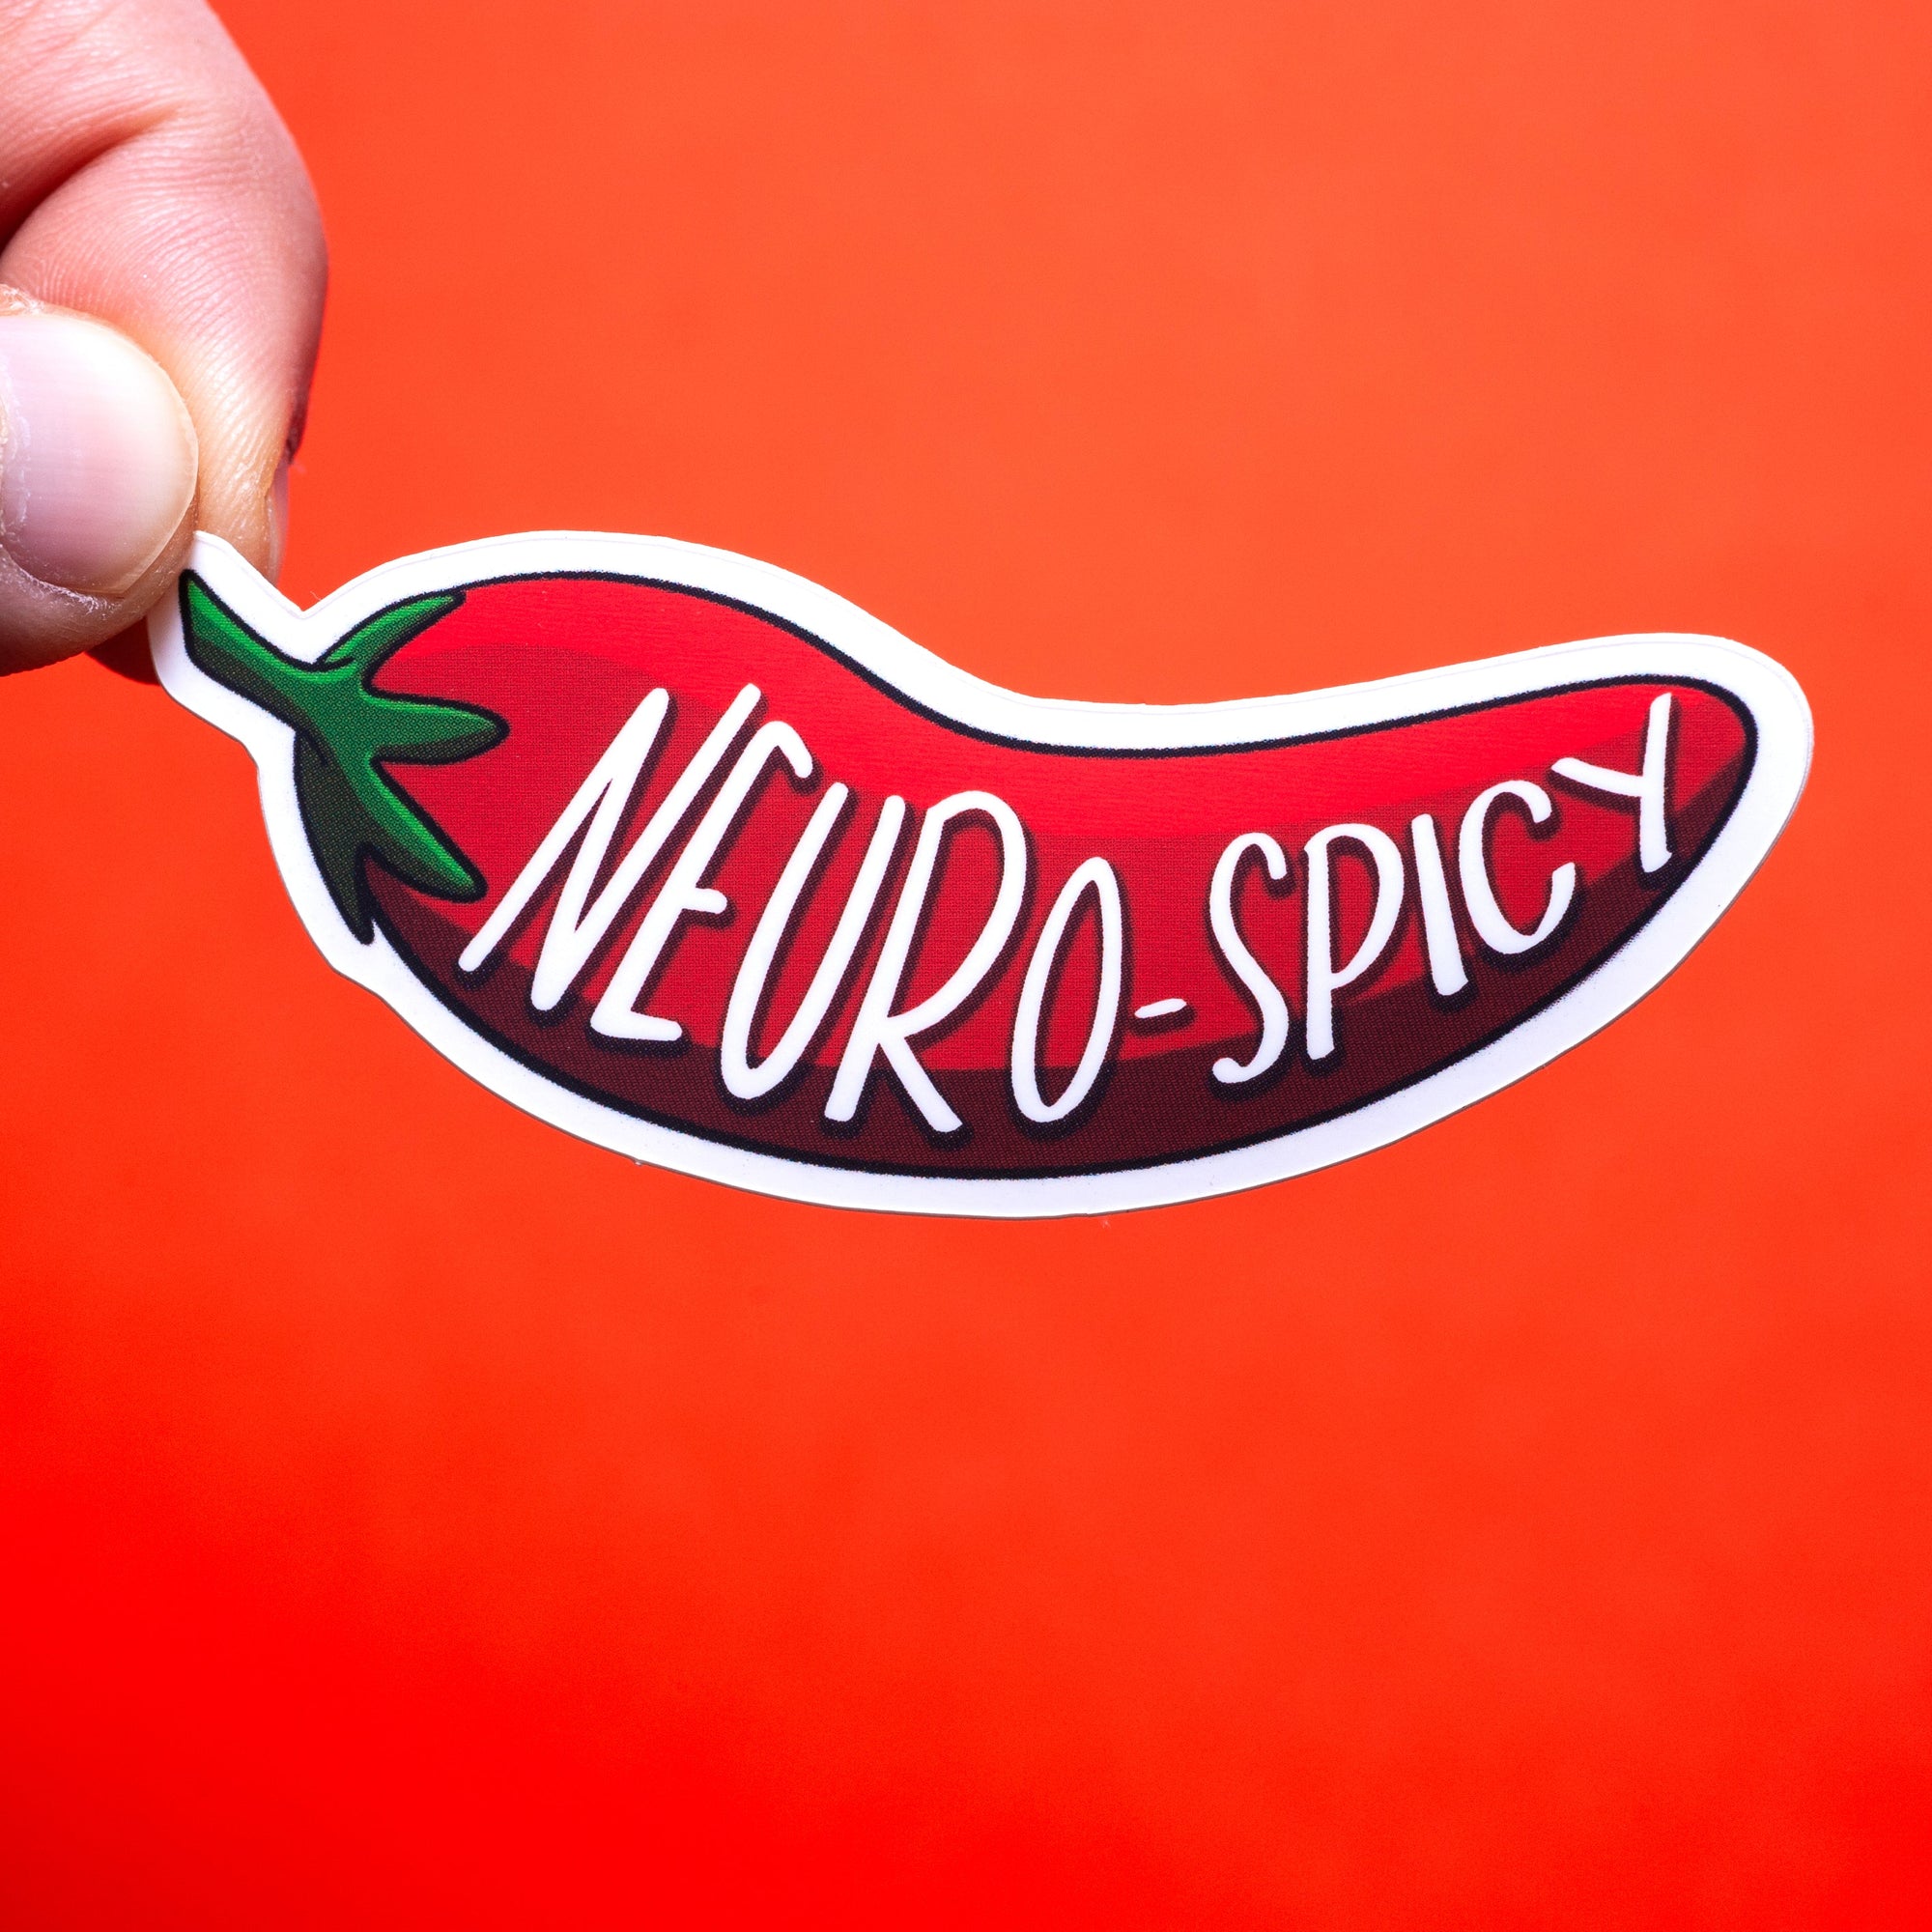 Neuro-spicy sticker